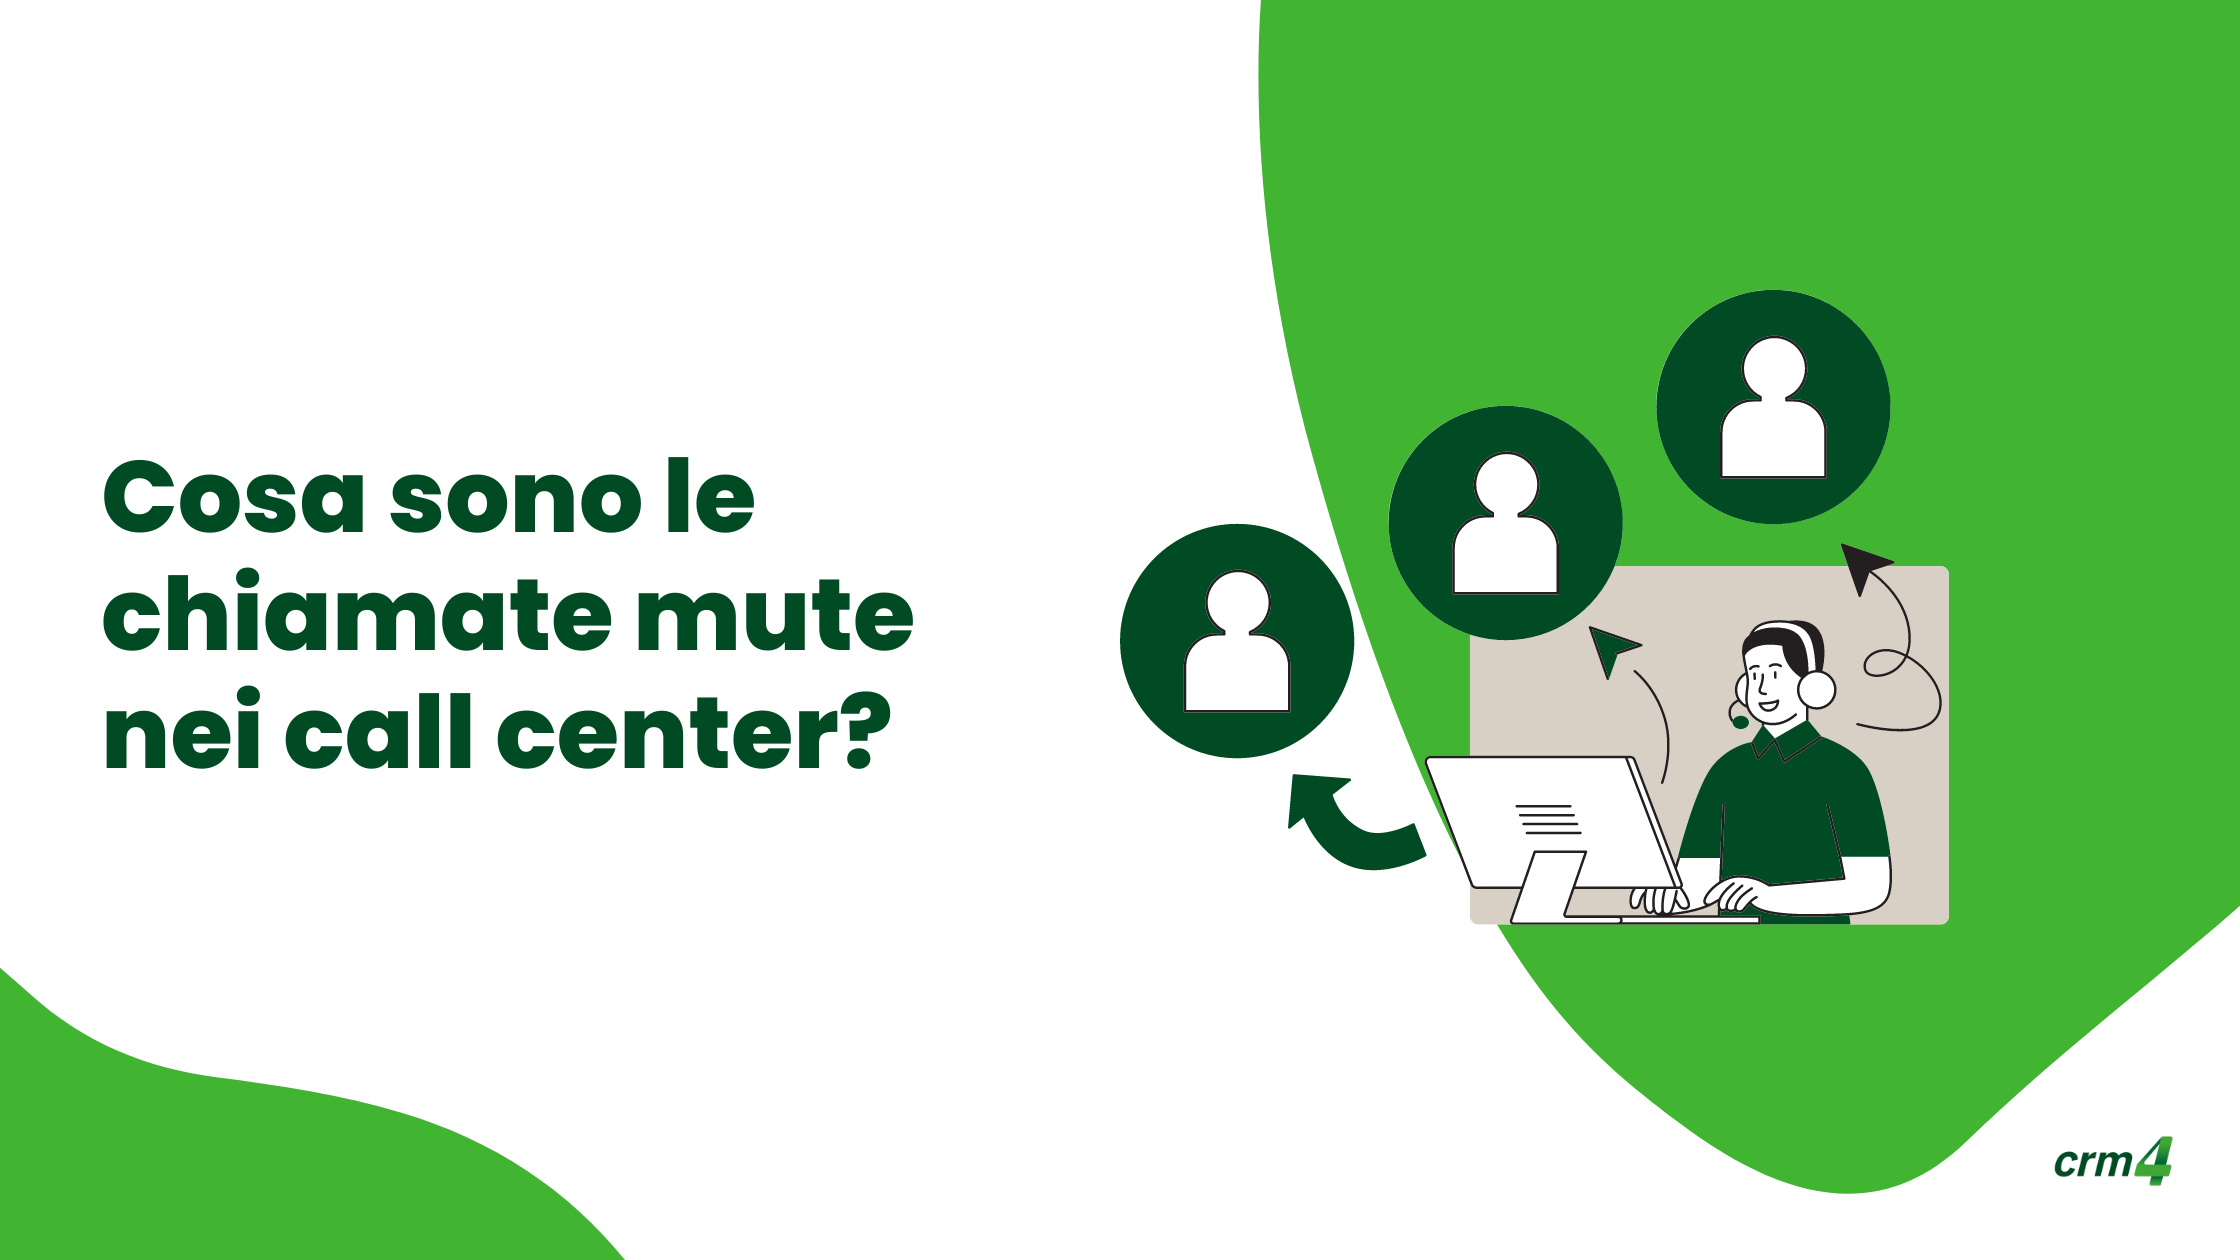 Cosa sono le chiamate mute nei call center?